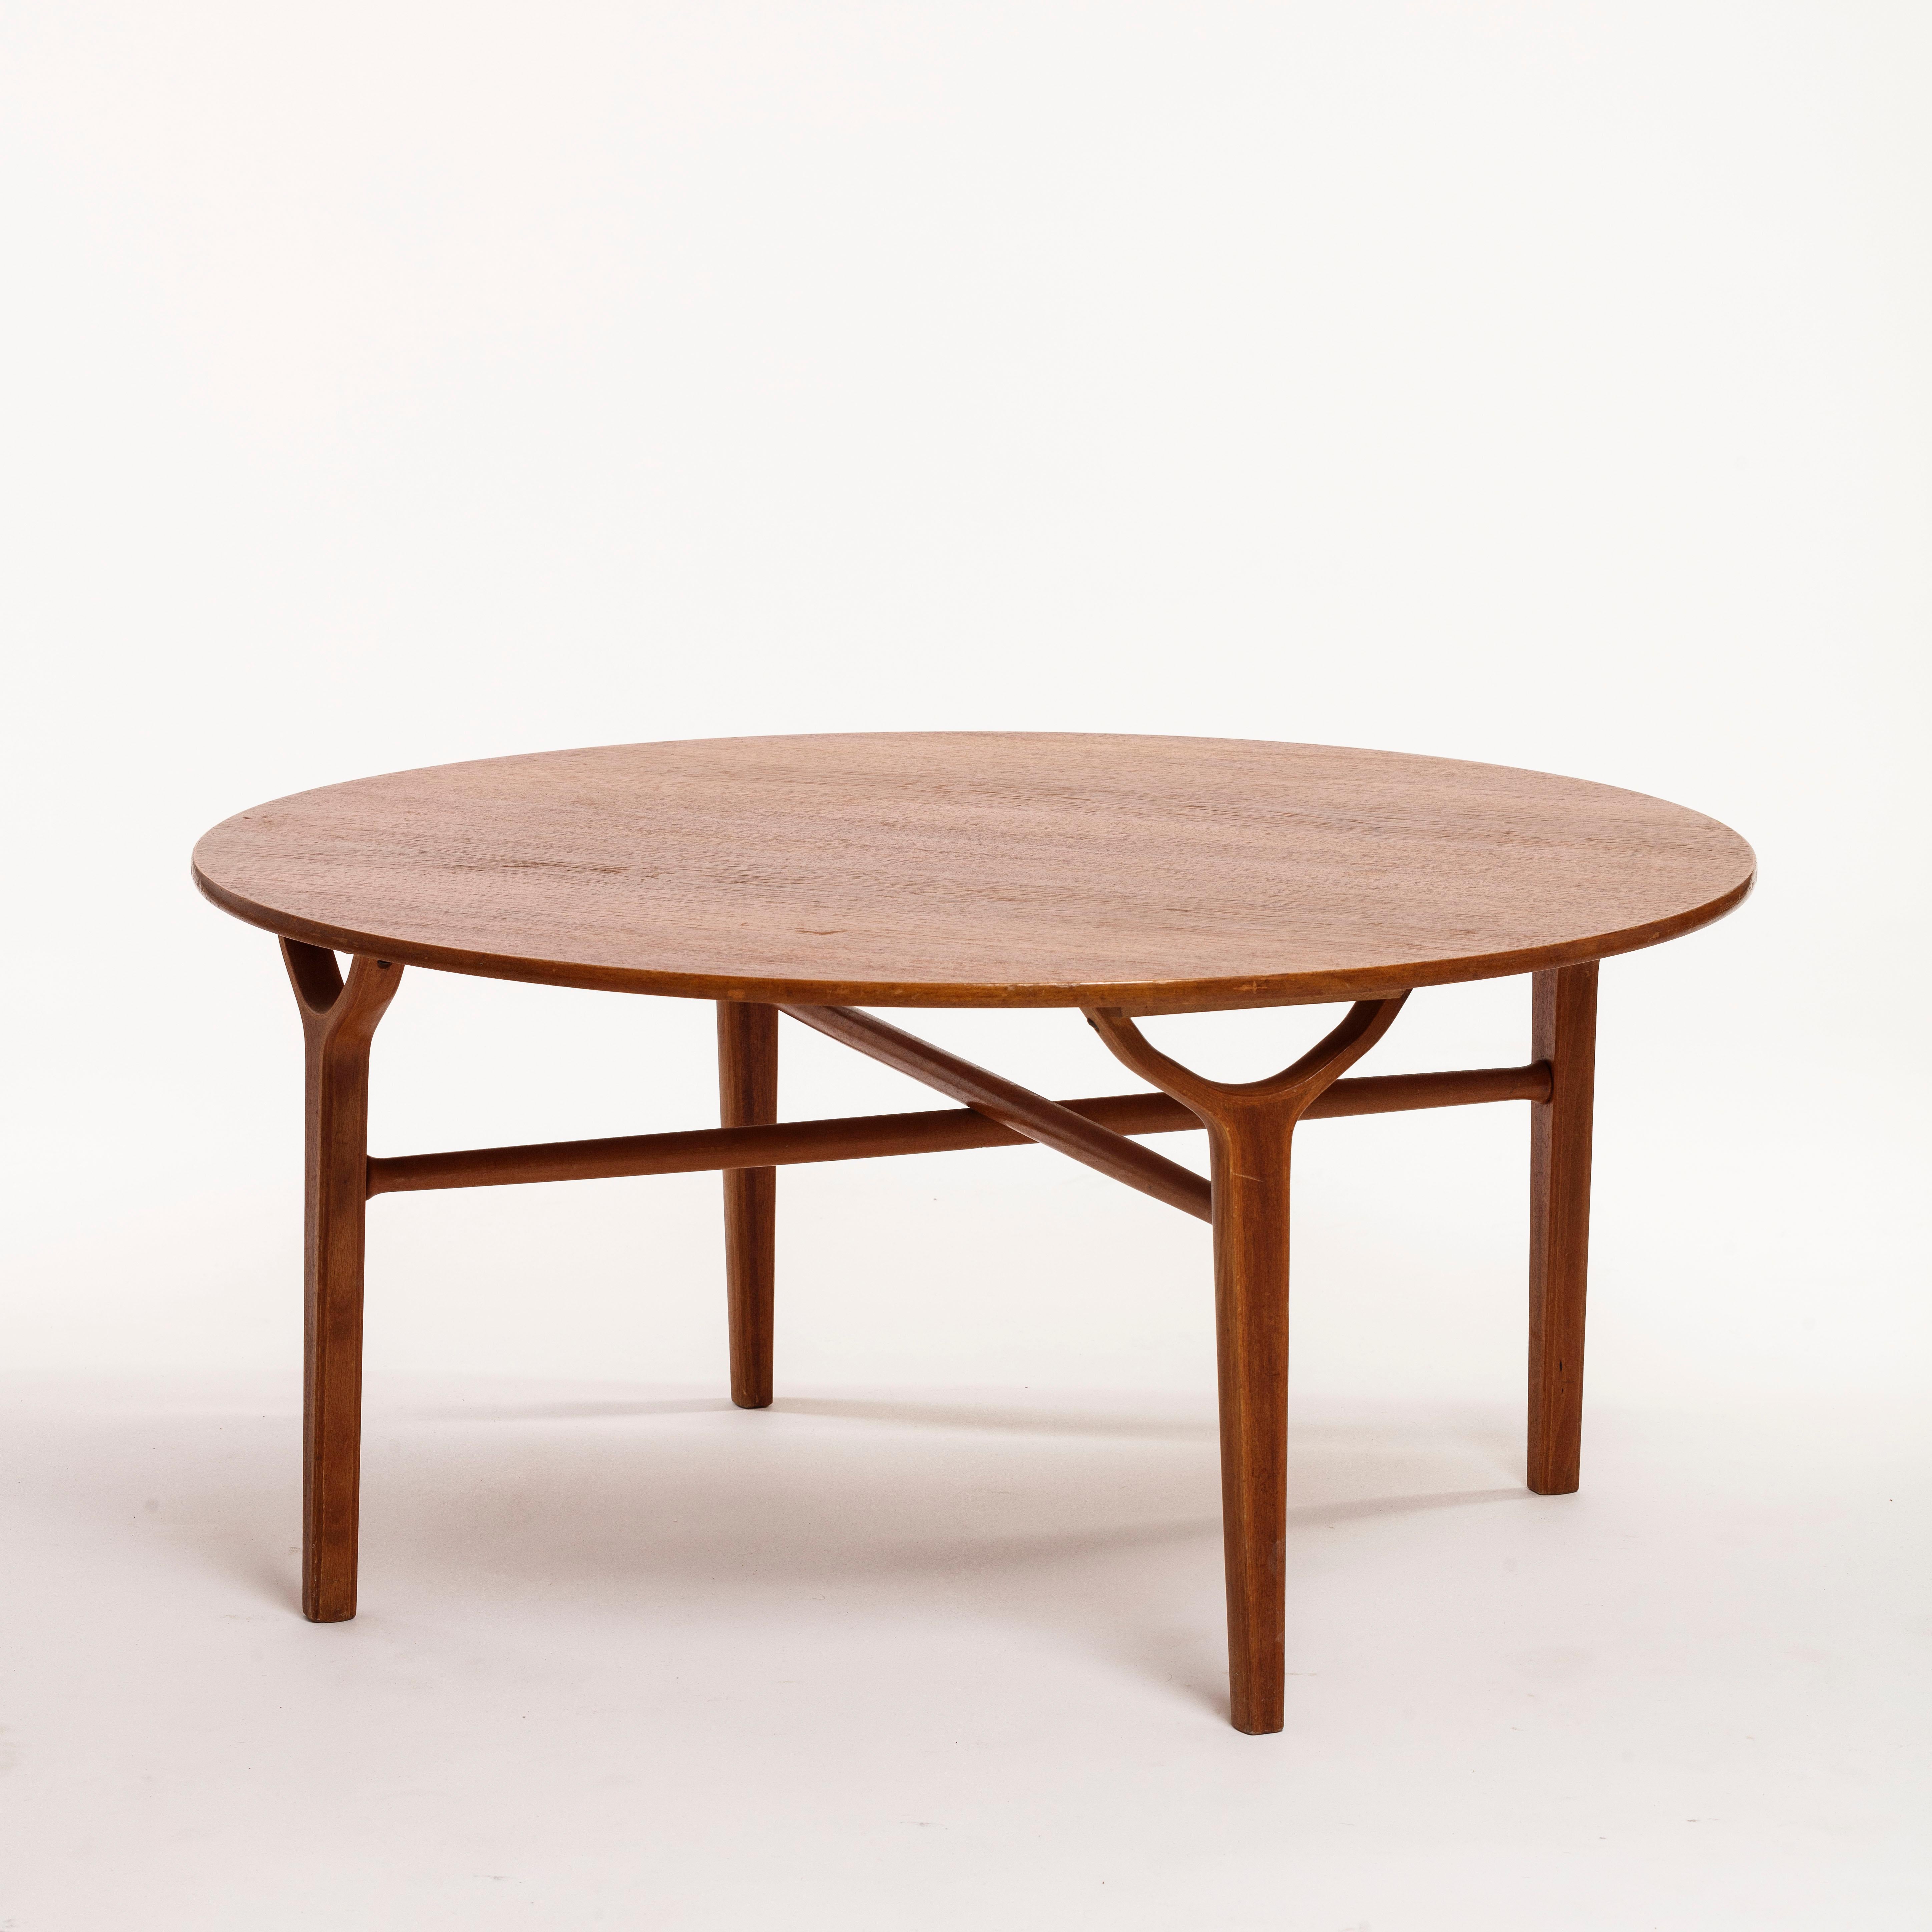 Peter Hvidt (1916–1986) Danish architect and furniture designer, co-founder of Hvidt & Mølgaard.
Rare coffee table model 6900 / AX designed by Peter Hvidt & Orla Mølgaard-Nielsen. Produced by Fritz Hansen in Denmark.